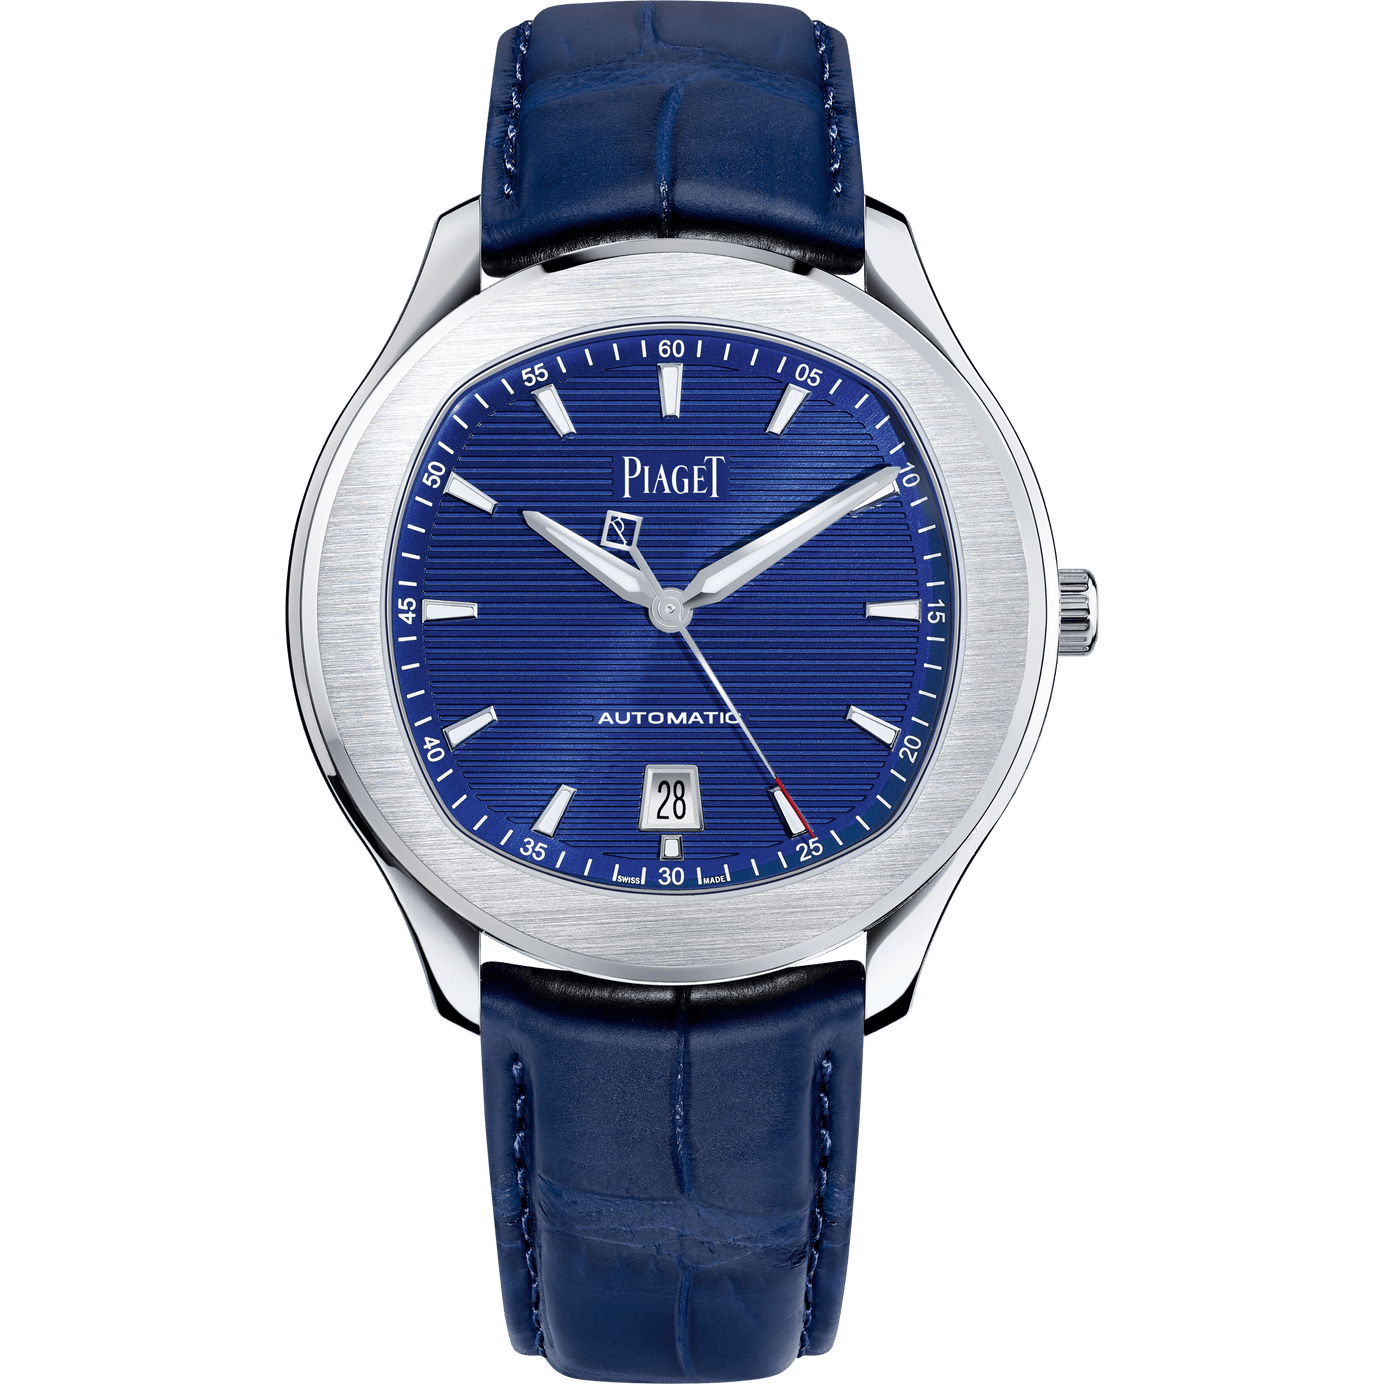 ピアジェPIAGET青ダイヤル　17石 ヴィンテージ手巻きメンズ腕時計スイス製seller